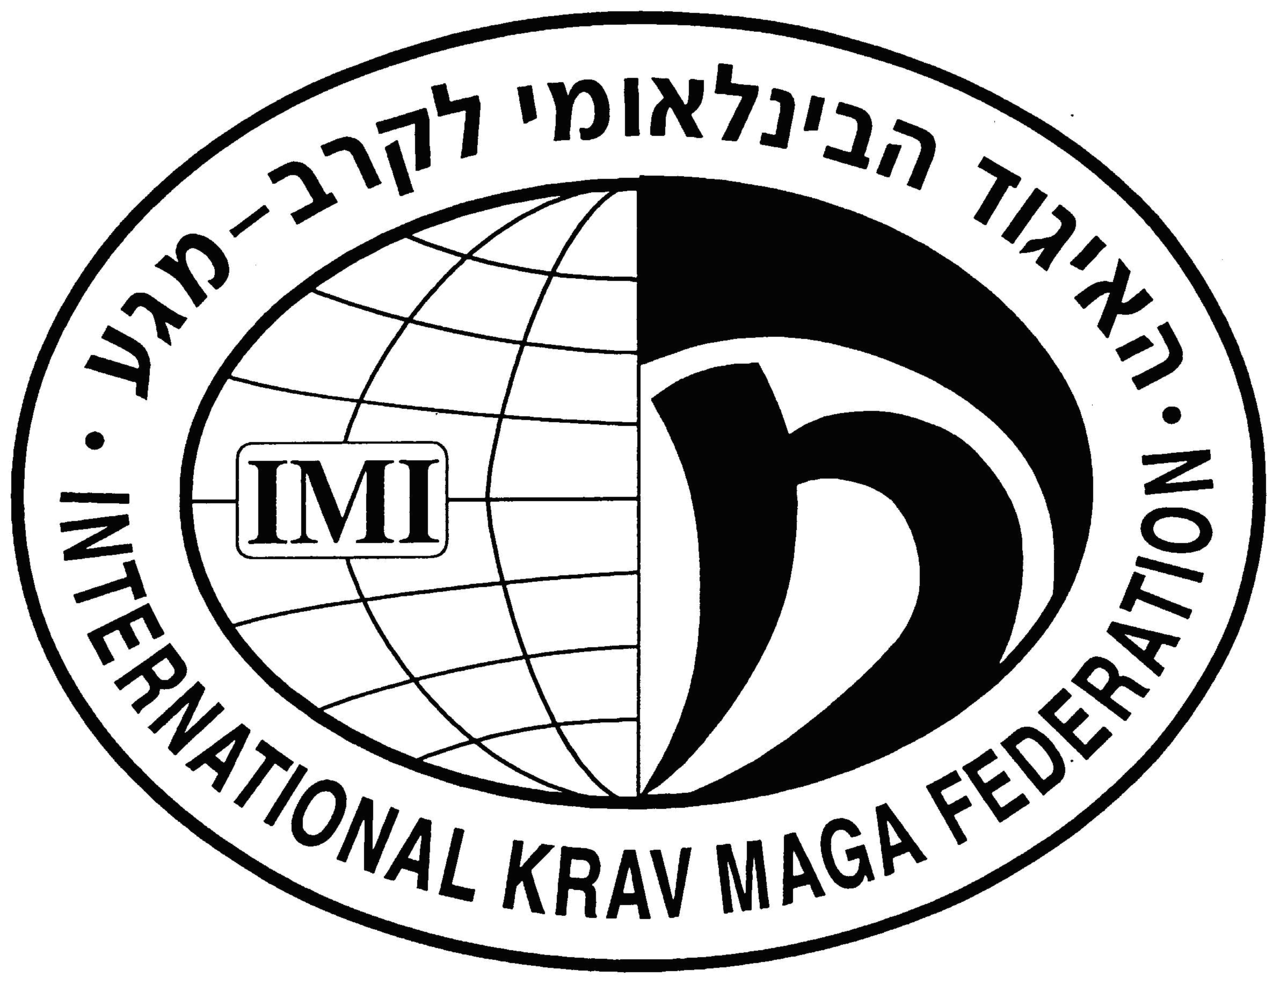 IKMF